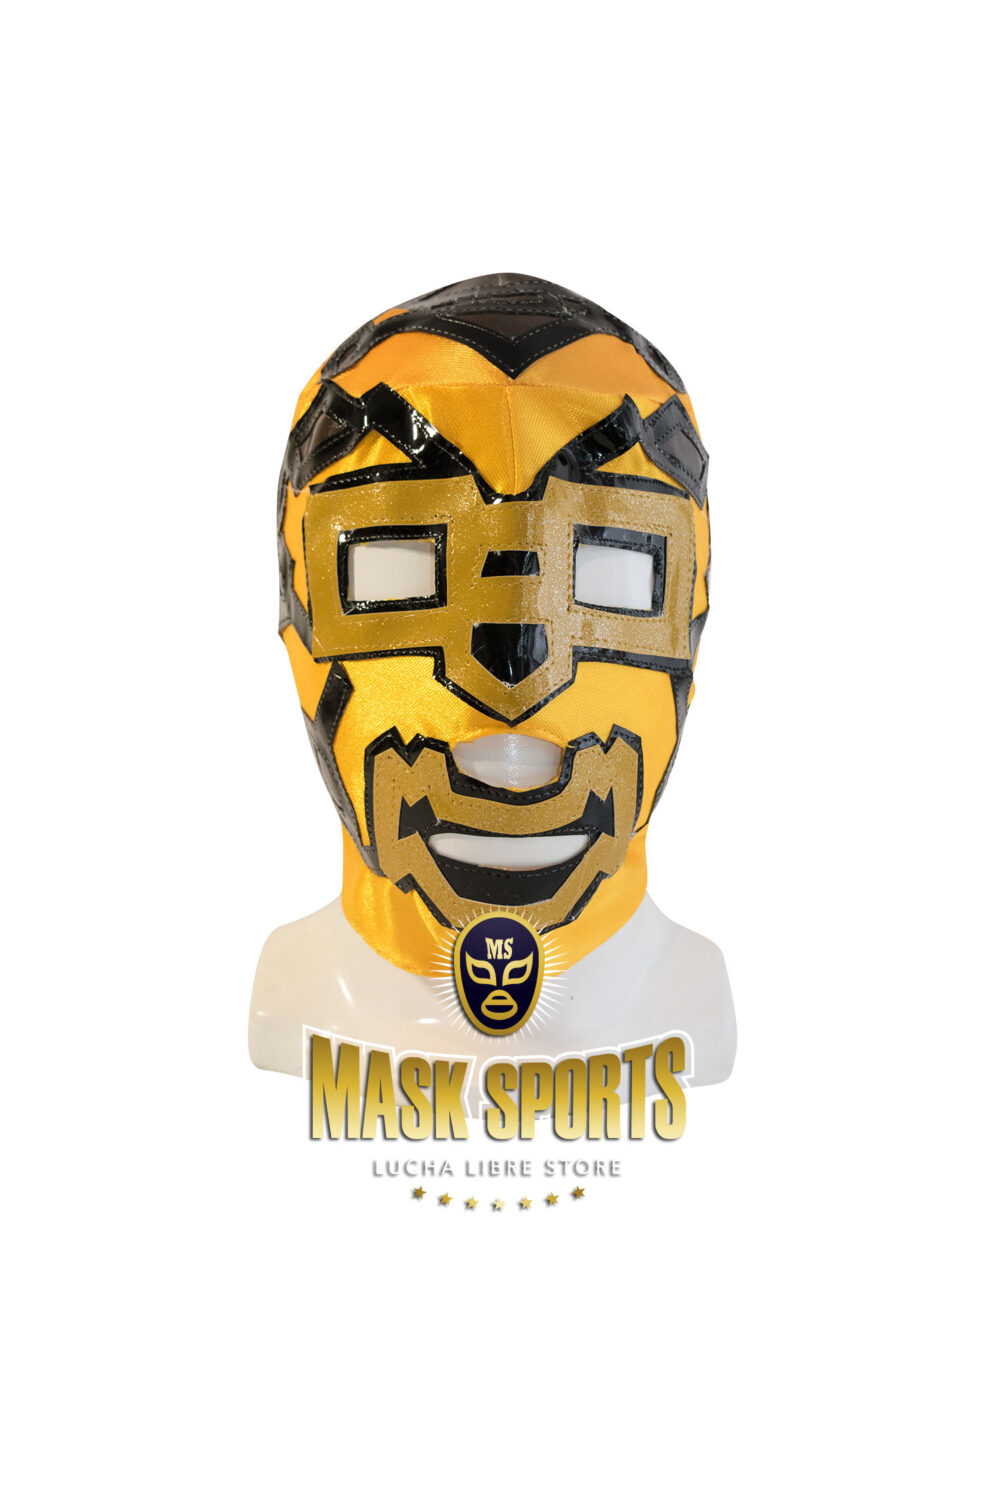 Prince Puma yellow & brown mask Masksports